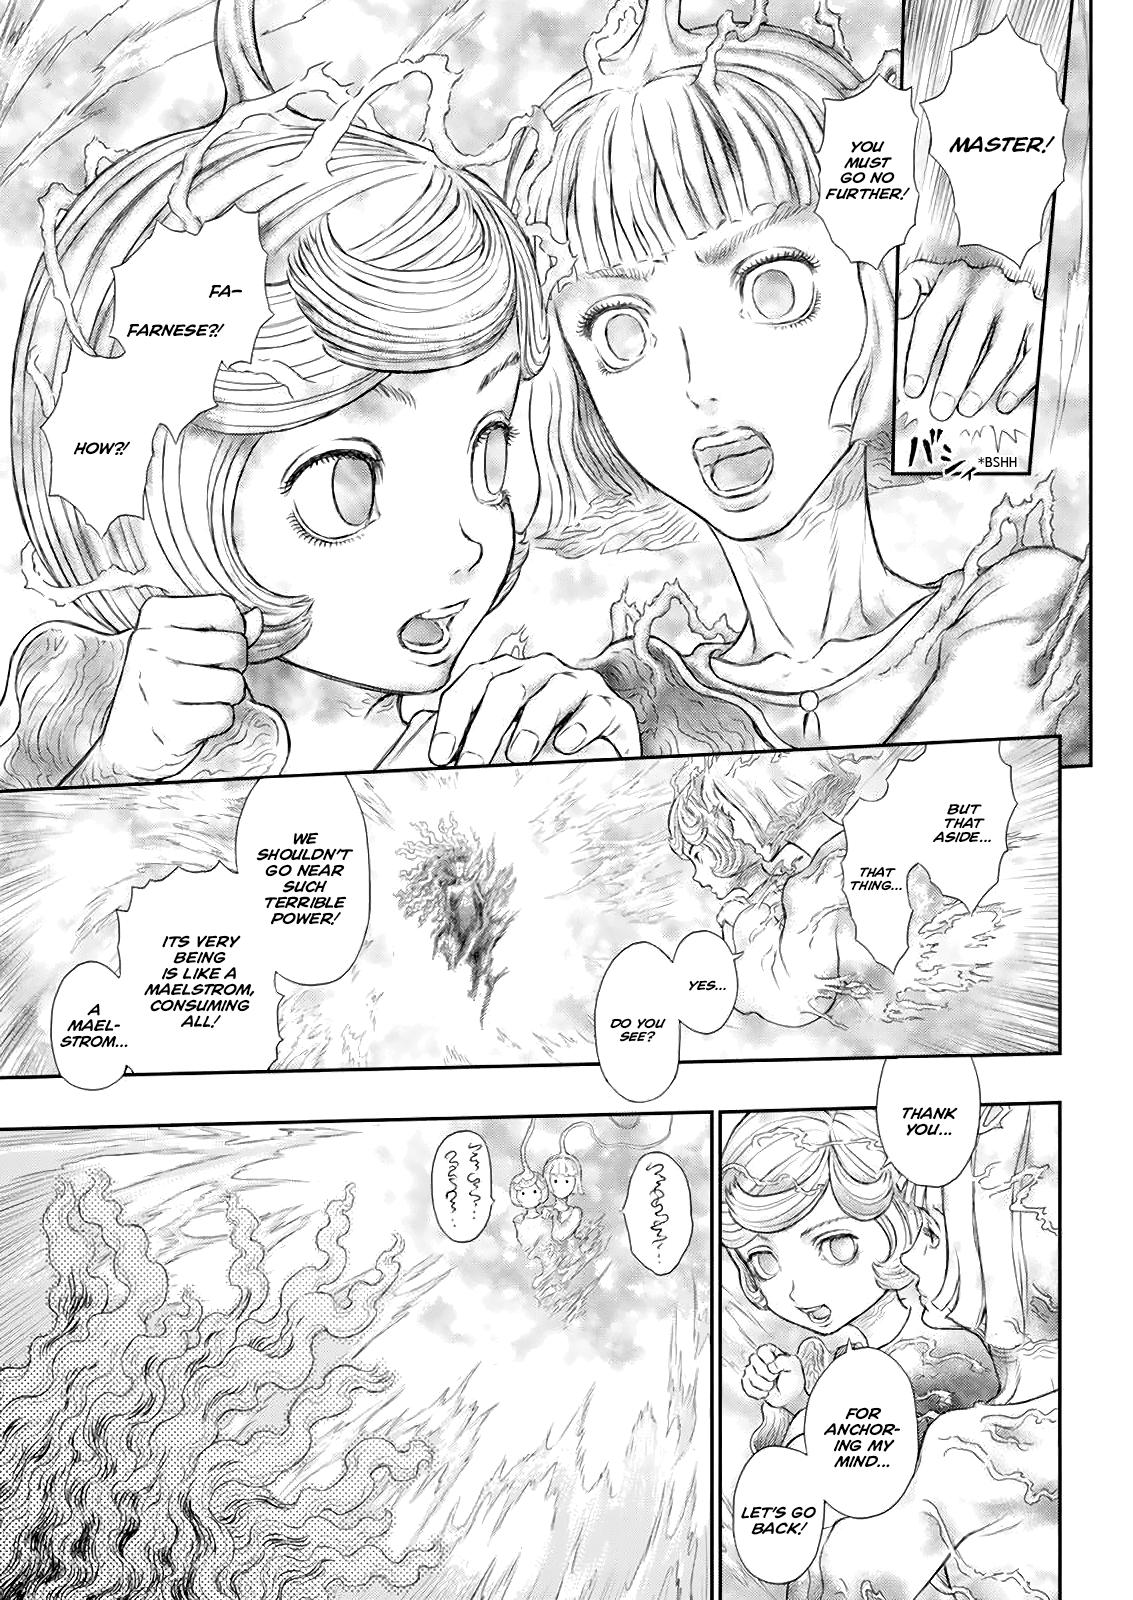 Berserk Manga Chapter 366 image 09